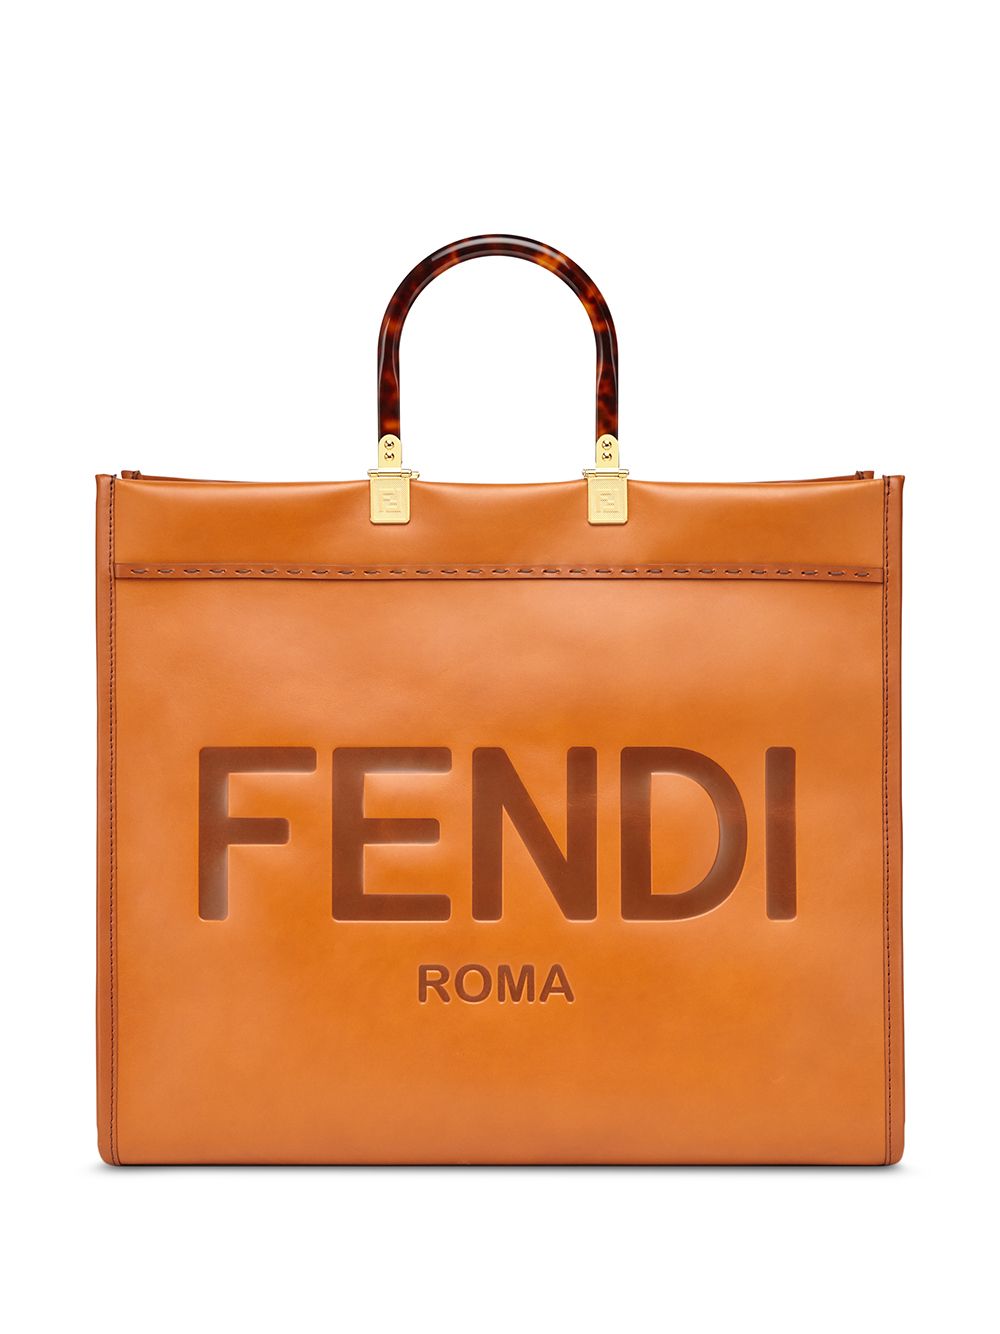 фото Fendi сумка-шопер sunshine с тиснением